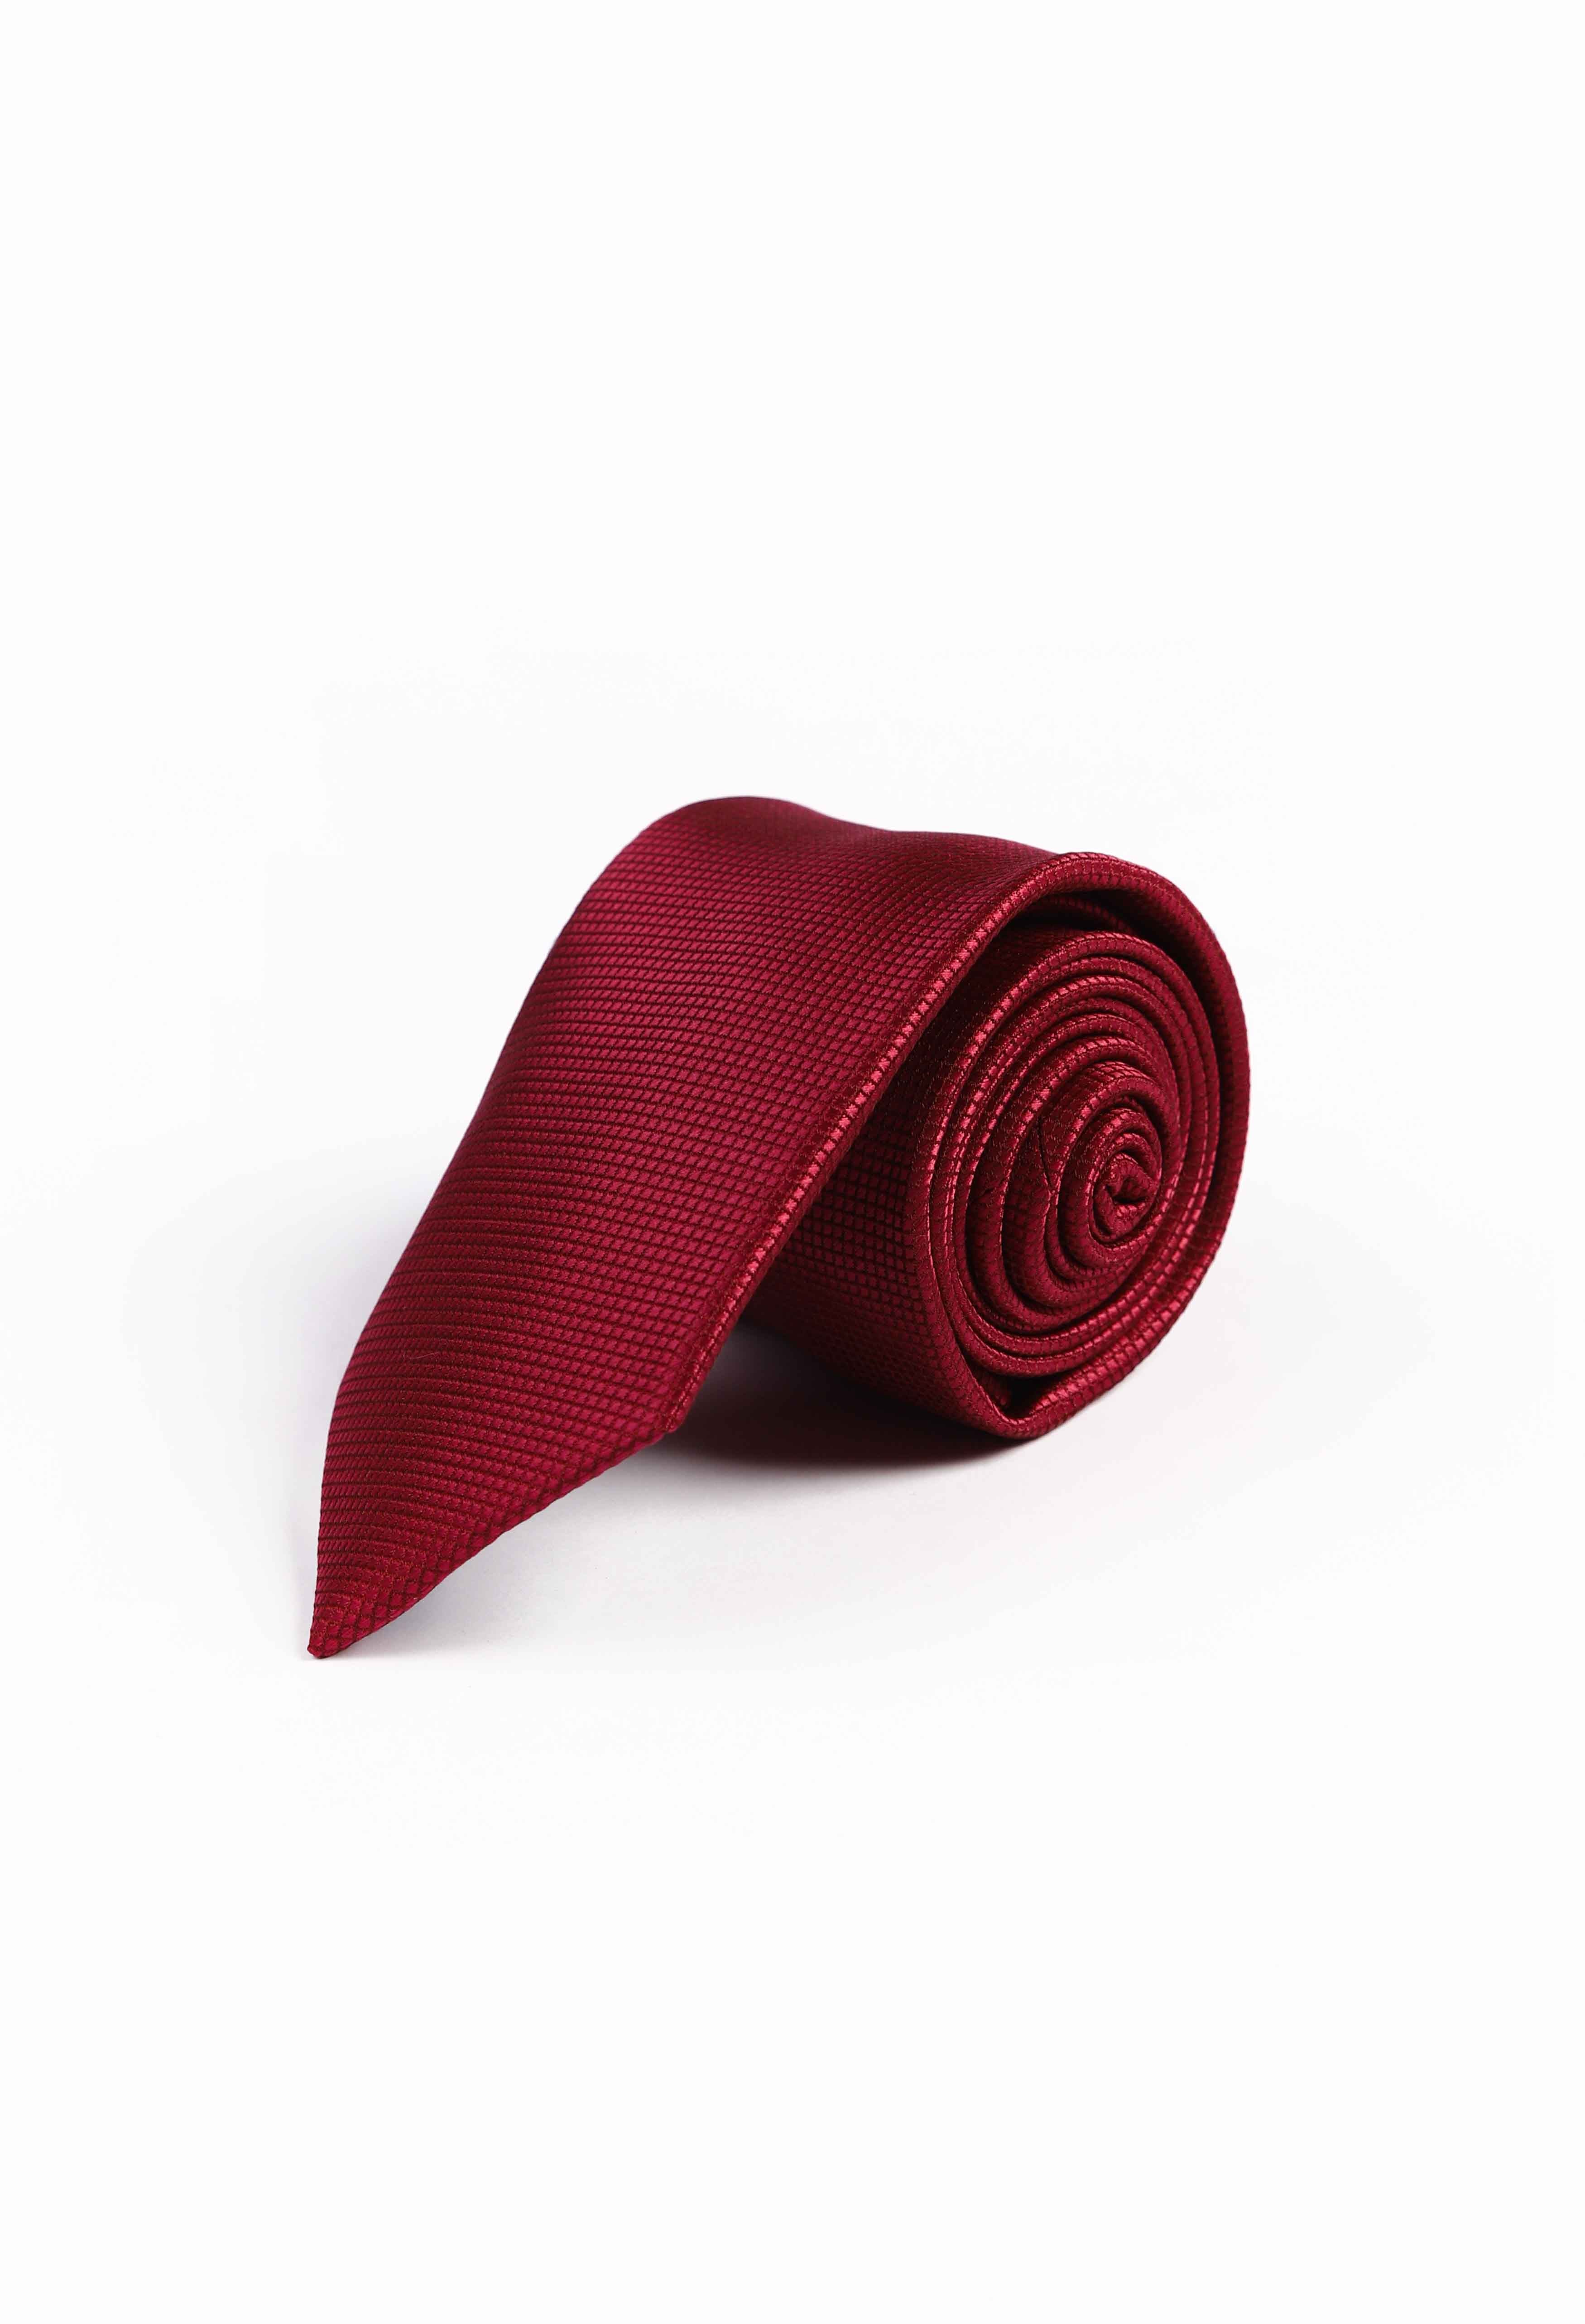 Fire Brick Red Plain Tie (TIE-000025)